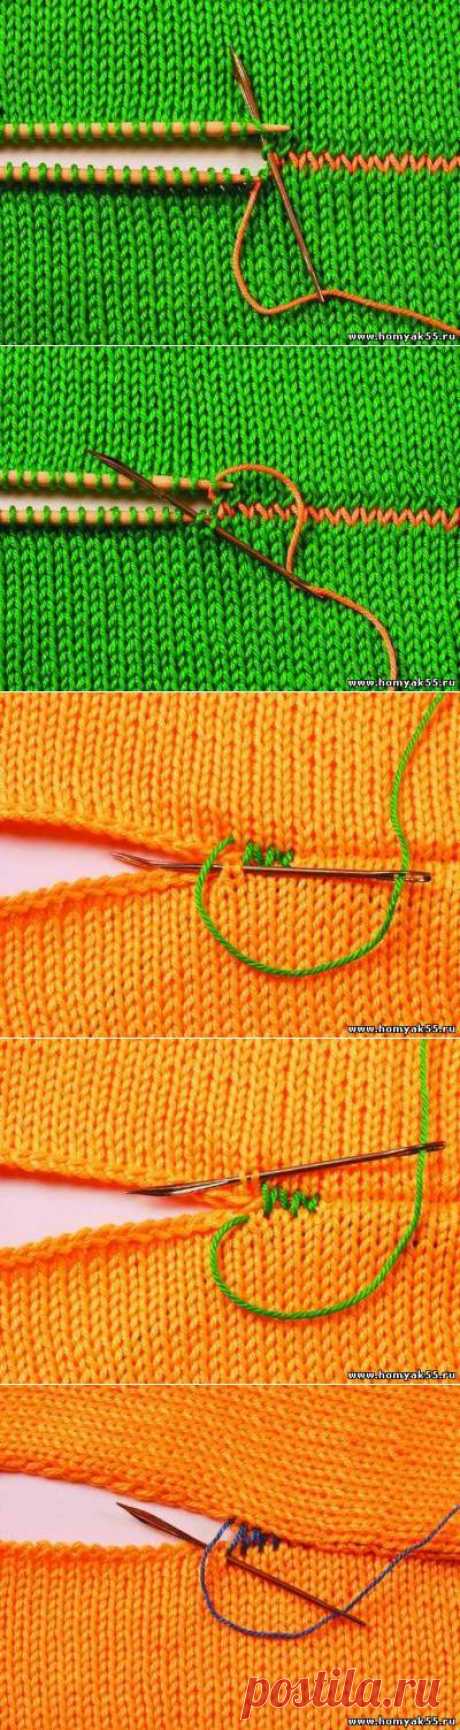 Выполнение швов в вязание | «Хомяк55.ру» сайт о вязании